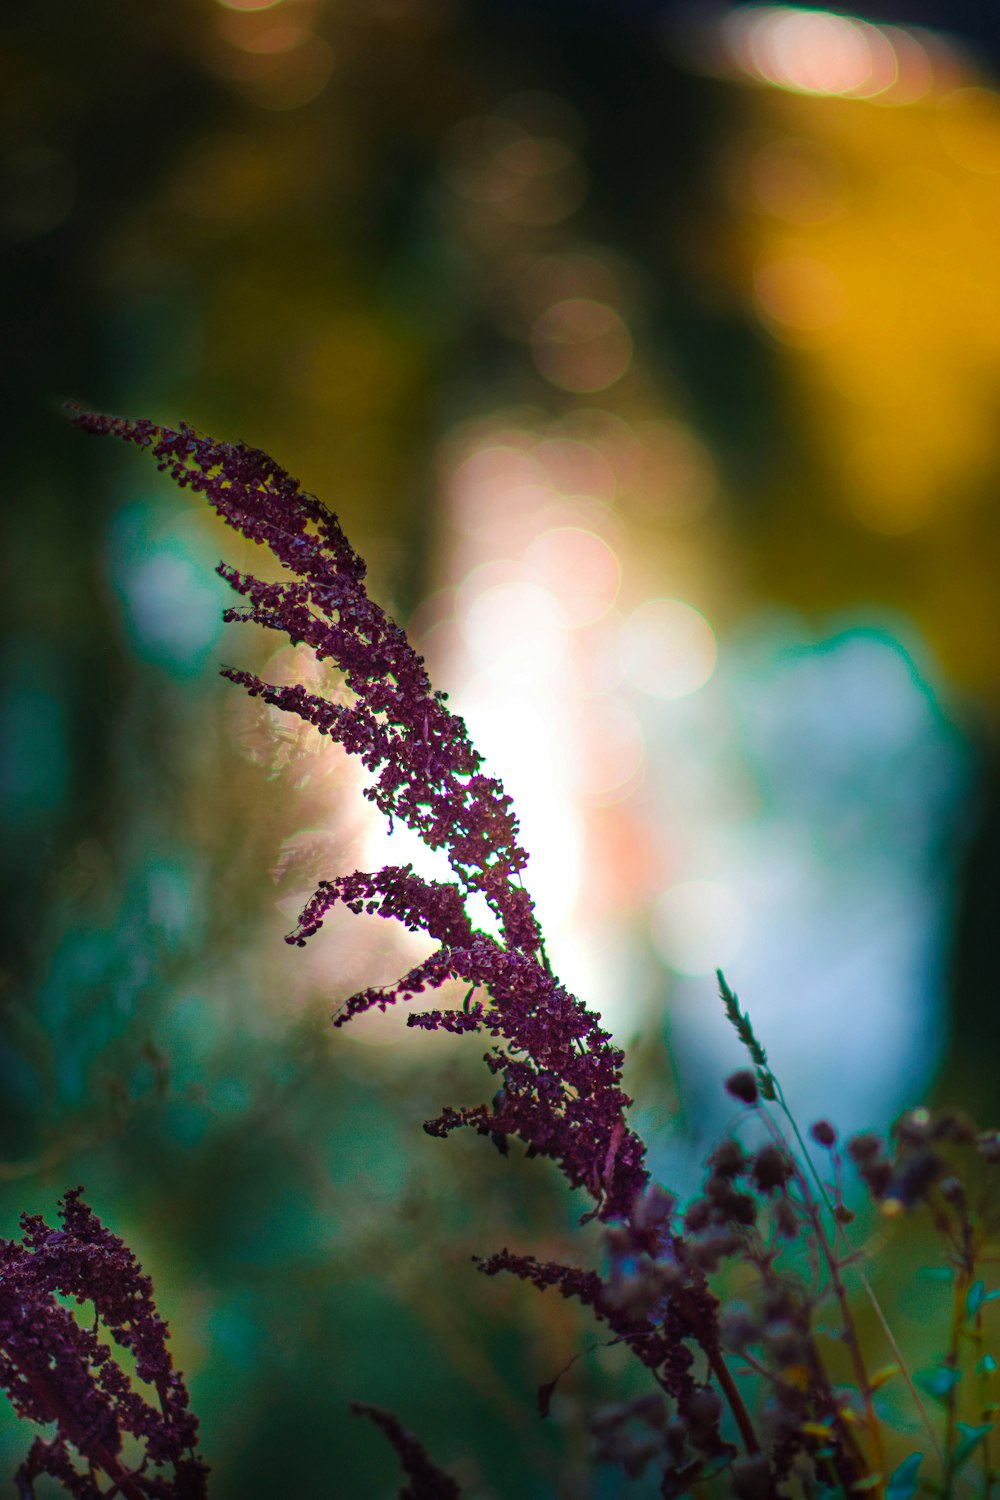 purple flowers in tilt shift lens